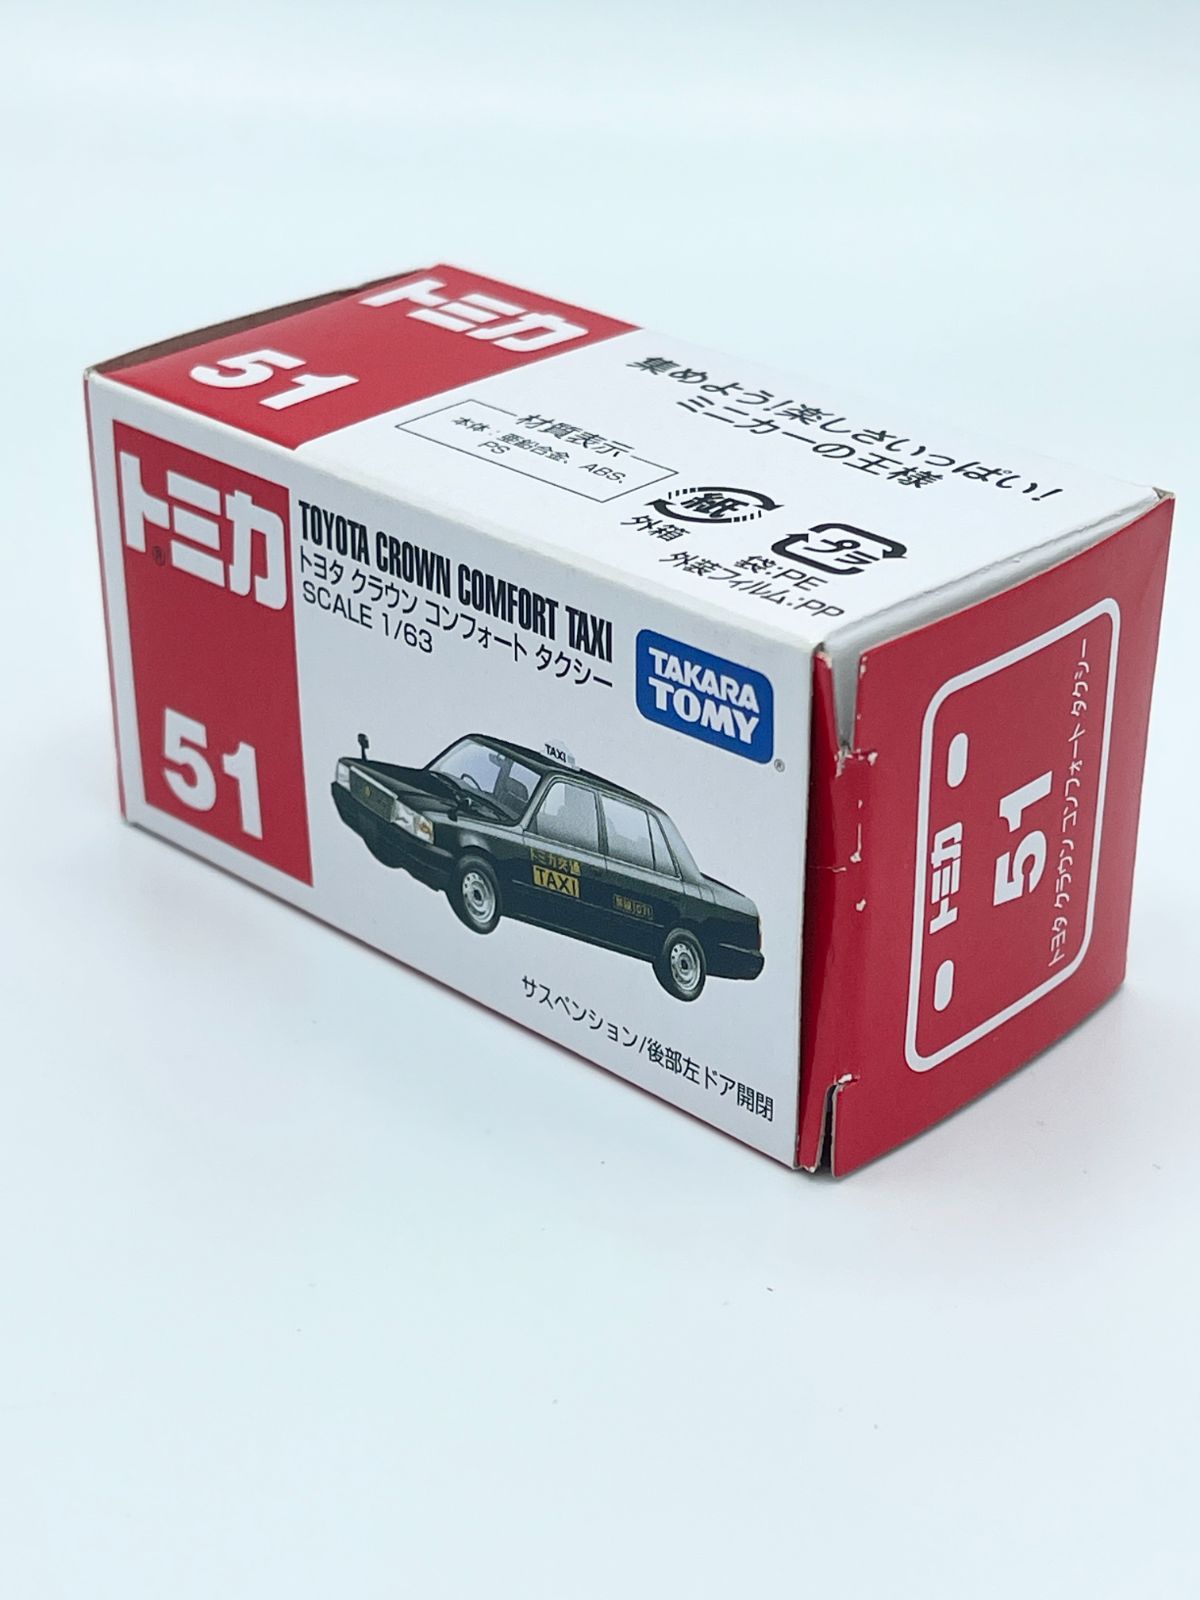 タカラトミー No.051 トヨタ クラウン コンフォートタクシー (ボックス)